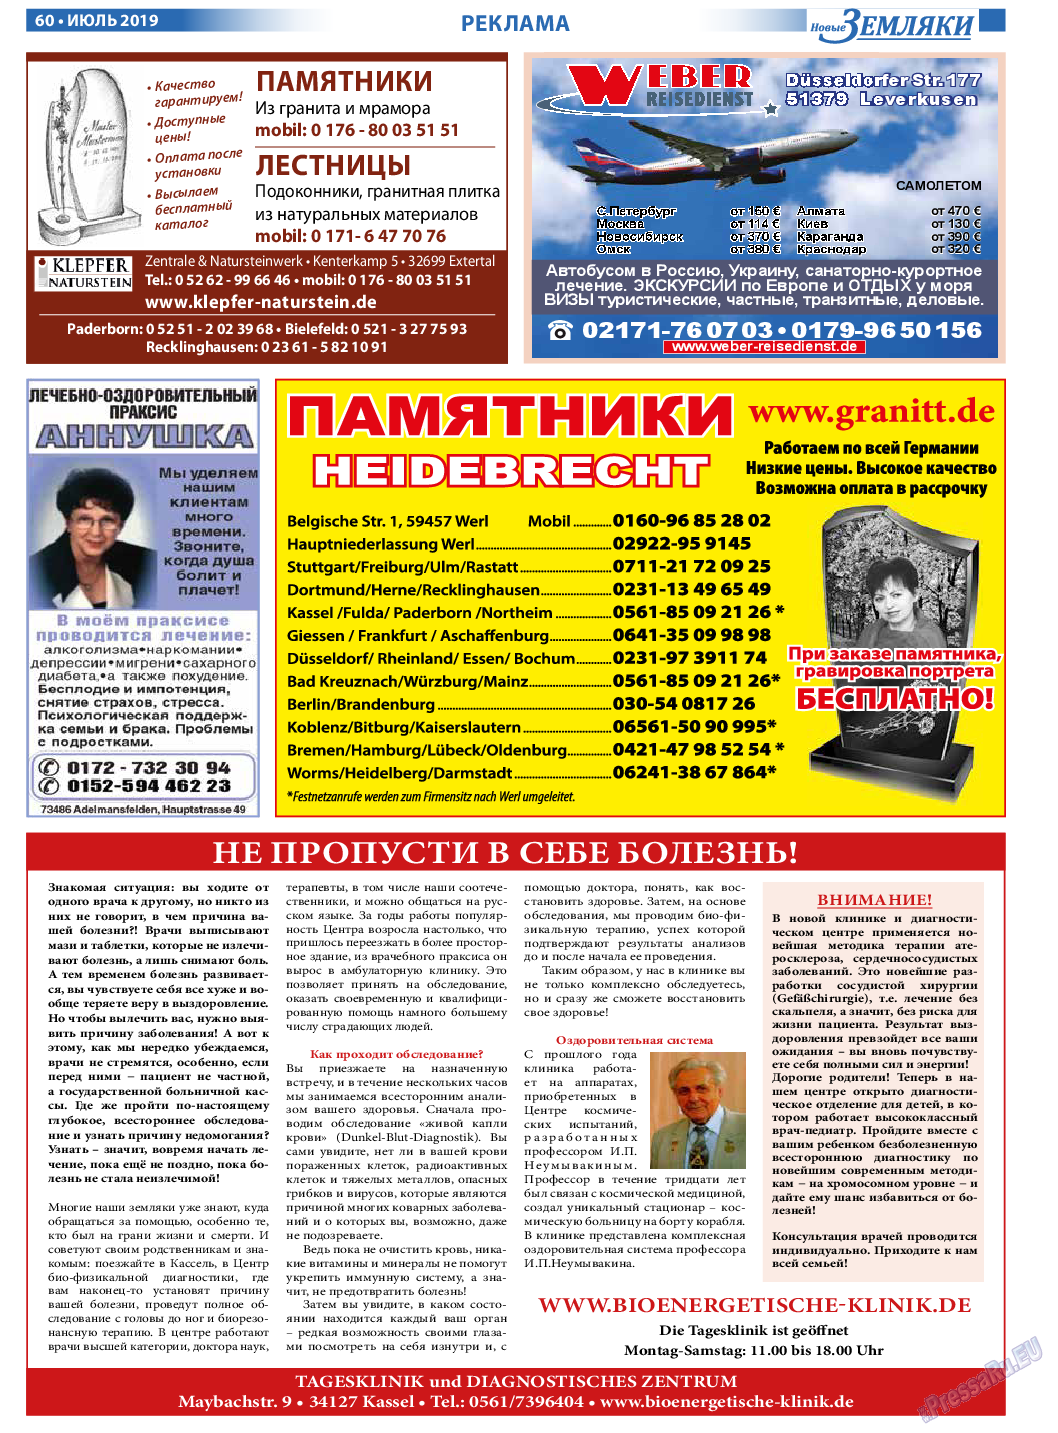 Новые Земляки, газета. 2019 №7 стр.60